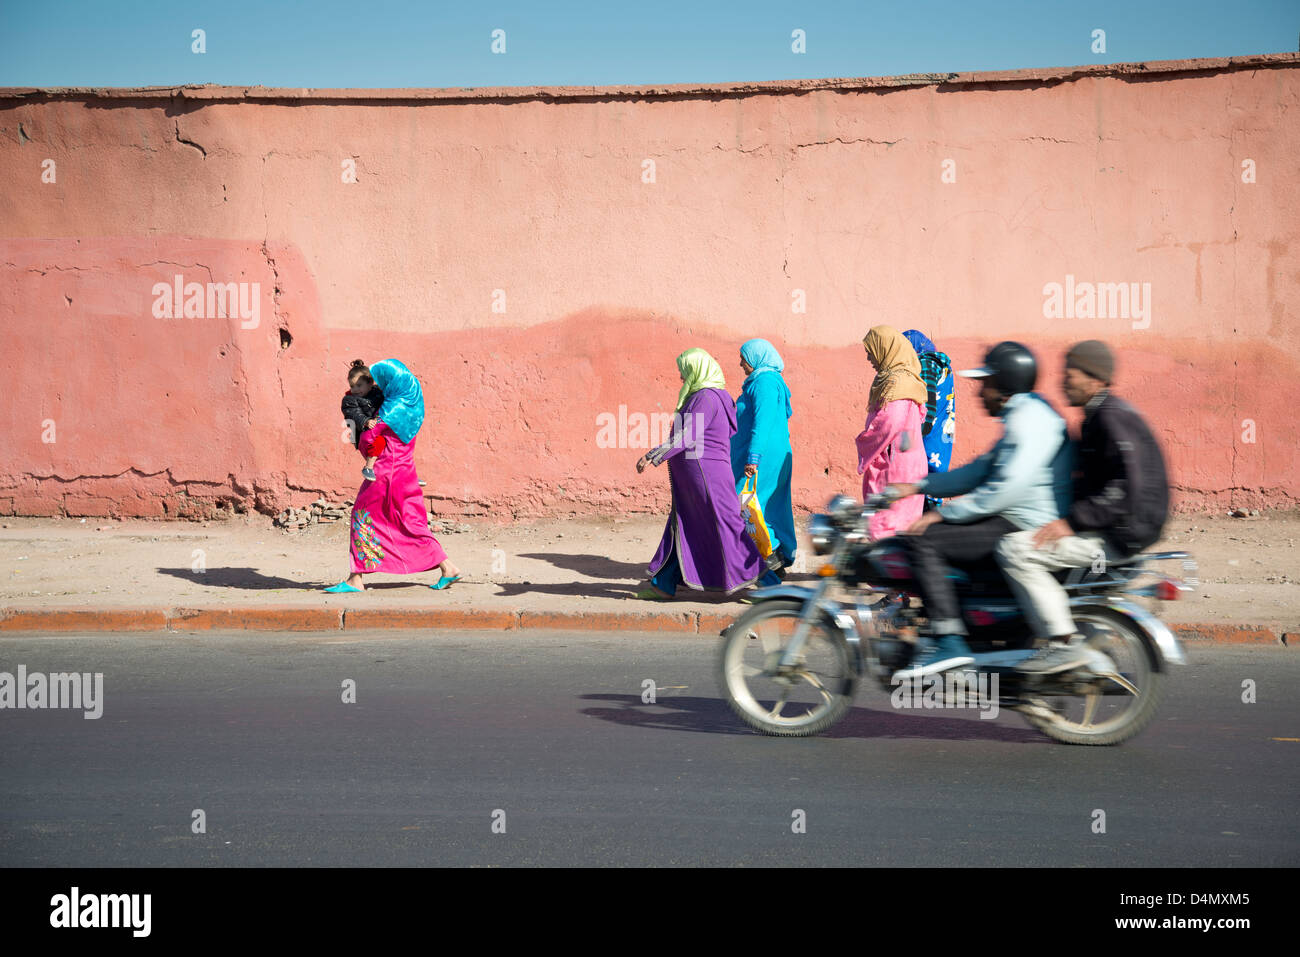 La mujer árabe caminando por la calle en ropa de colores Foto de stock